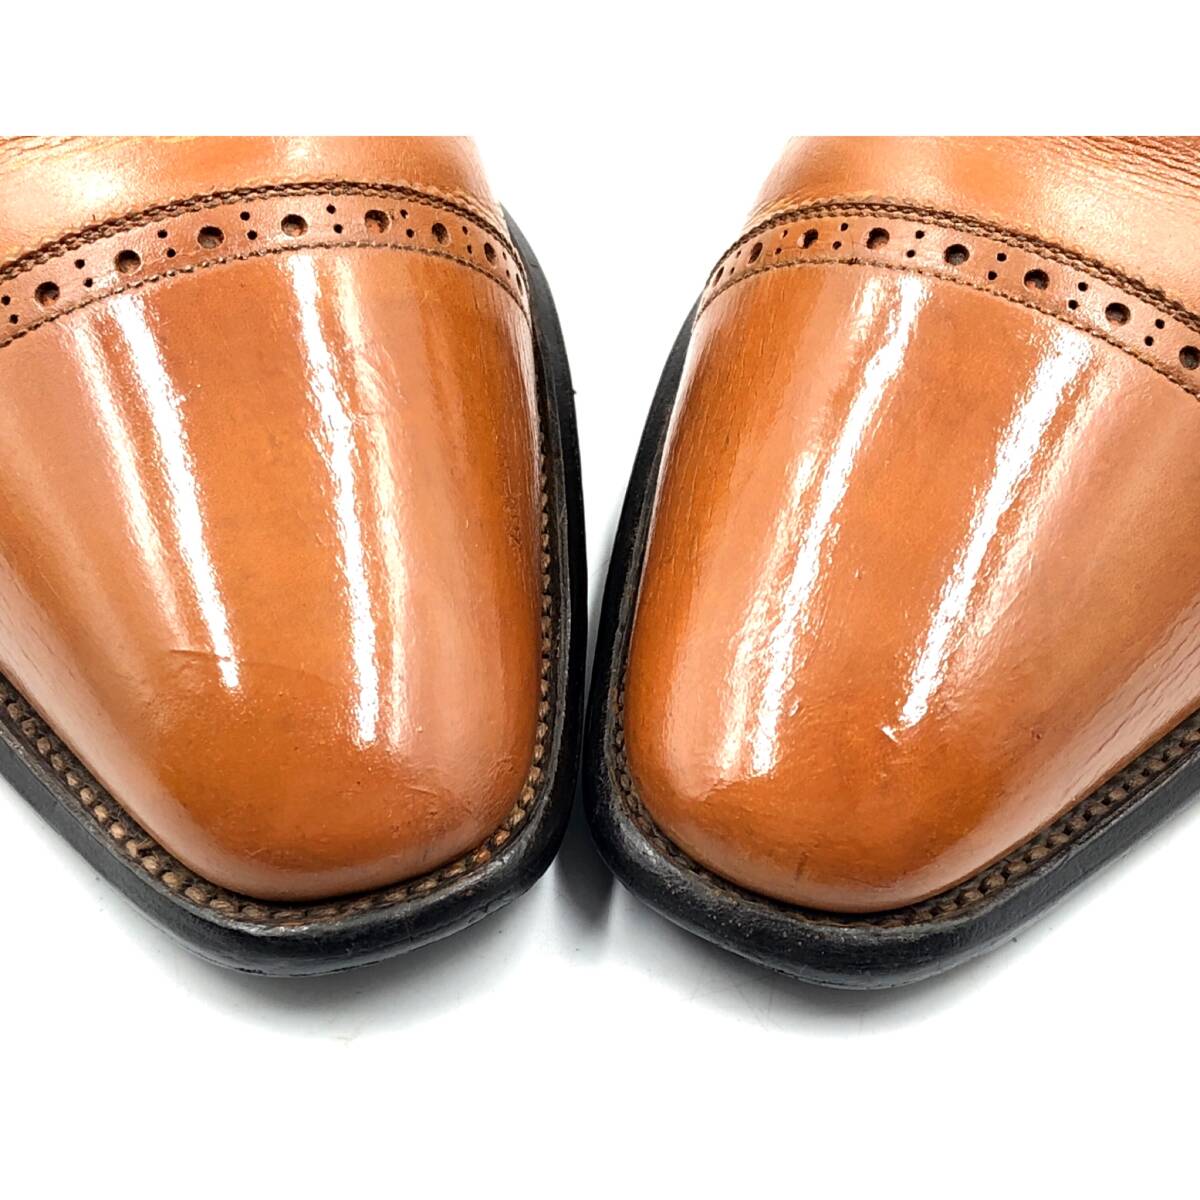 即決 SCOTCH GRAIN スコッチグレイン インペリアル 25.5cmE 948 メンズ レザーシューズ ストレートチップ 茶 ブラウン 革靴 皮靴 ビジネス